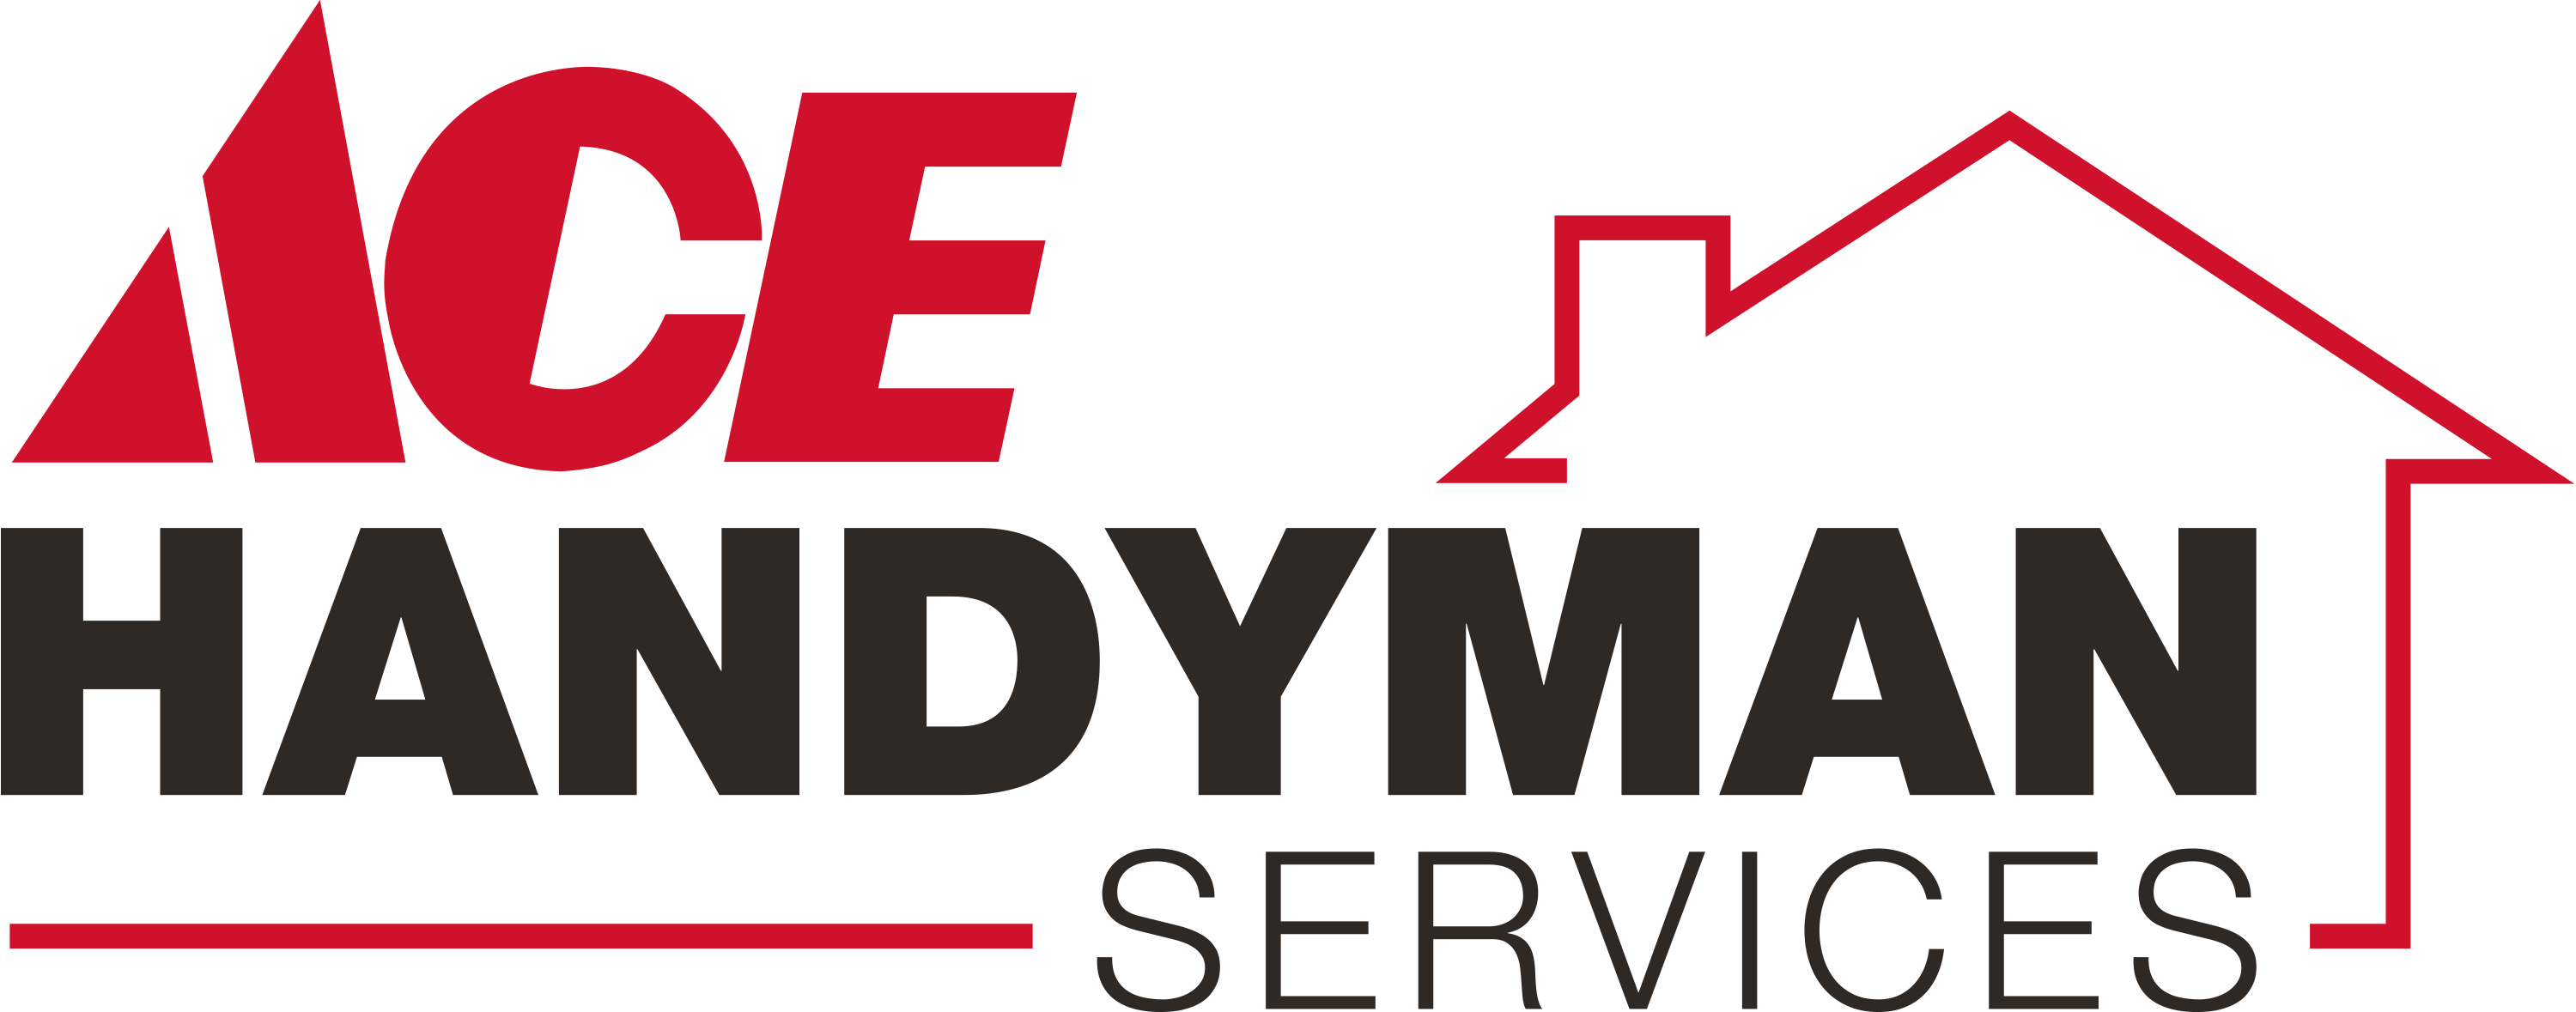 Ace Handyman Services East Gwinnett Logo